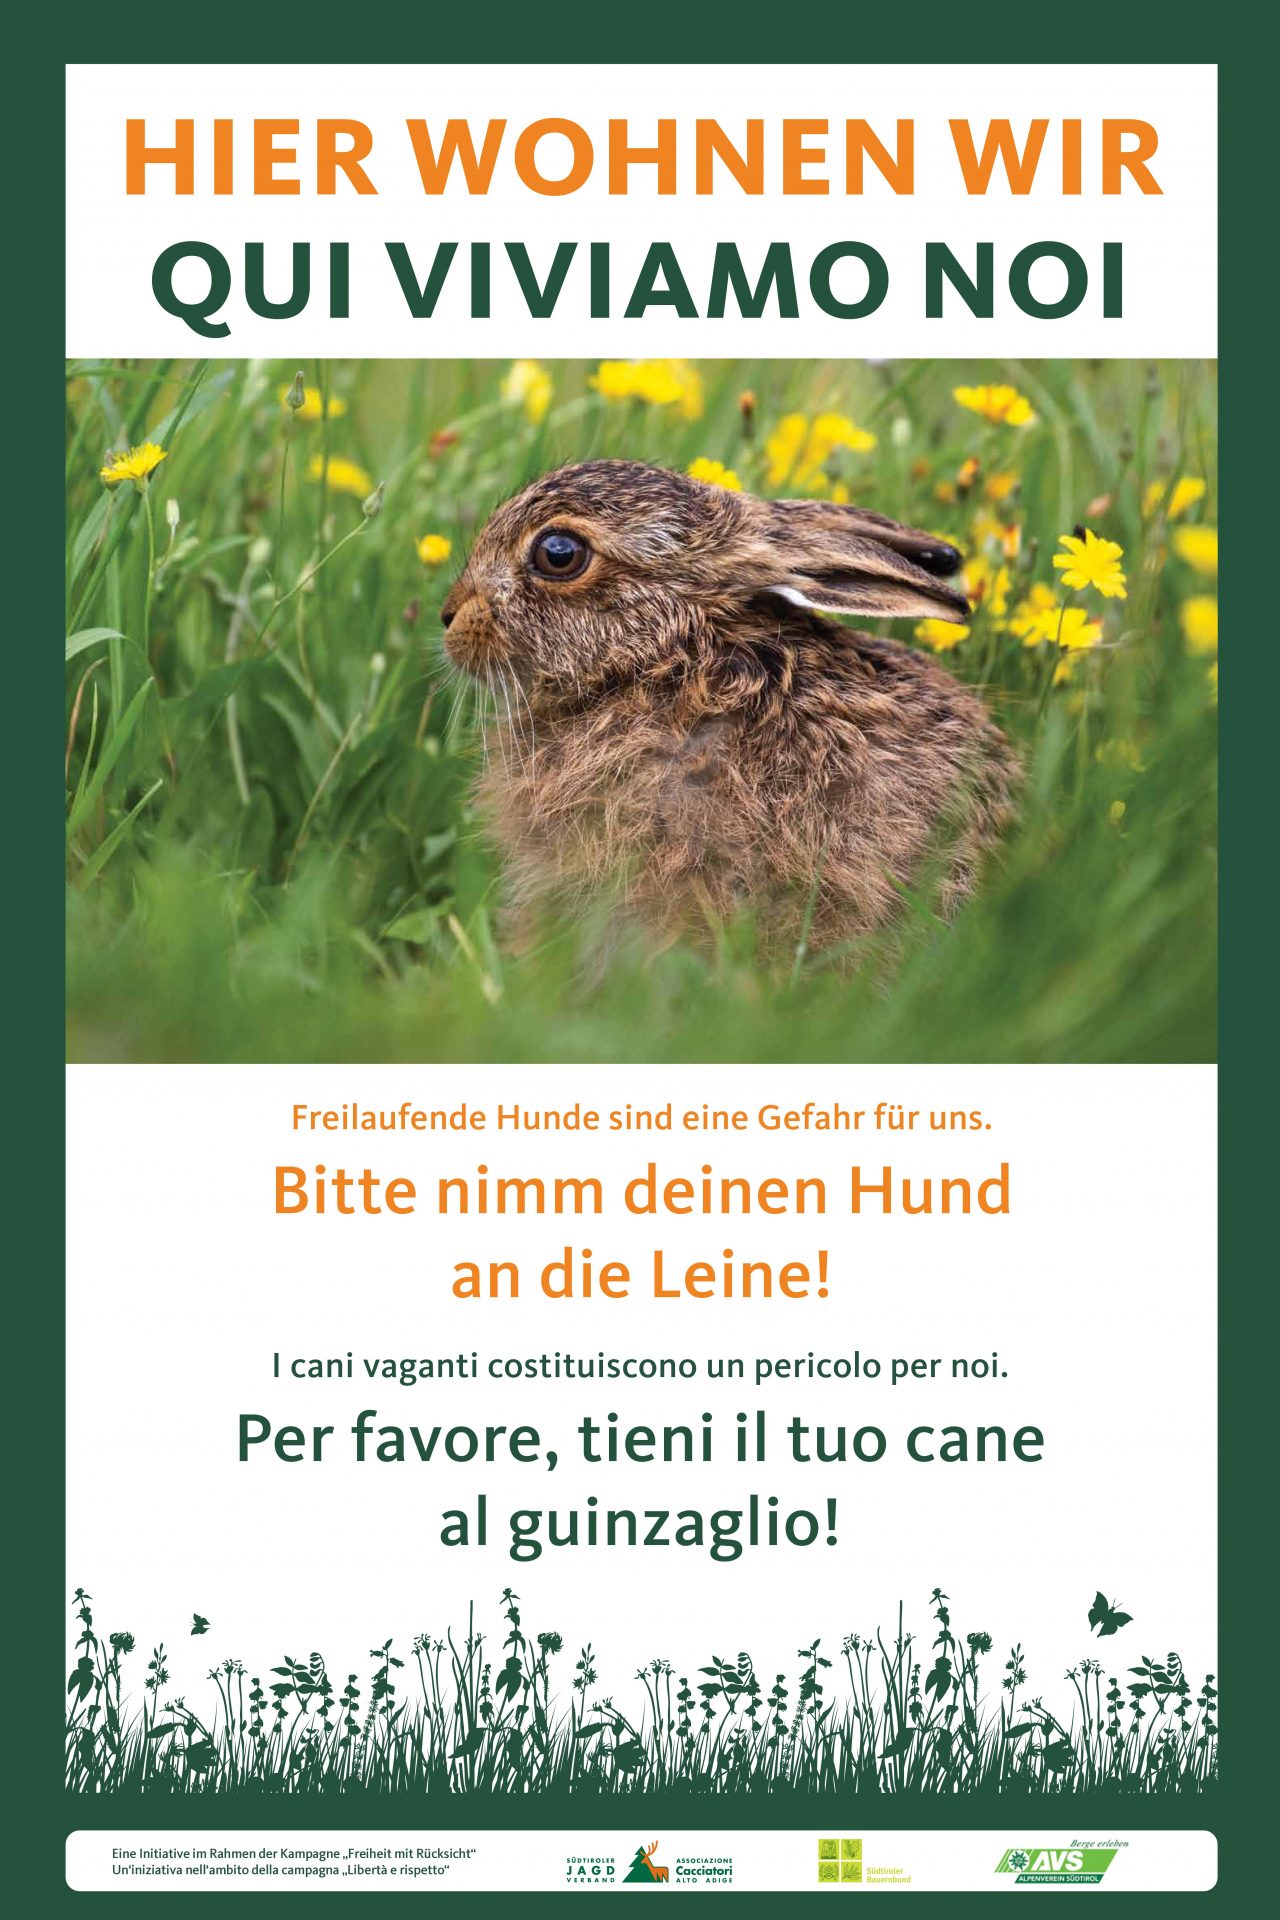 Kampagnenschild "Hier wohnen wir" (c)Südtiroler Jagdverband